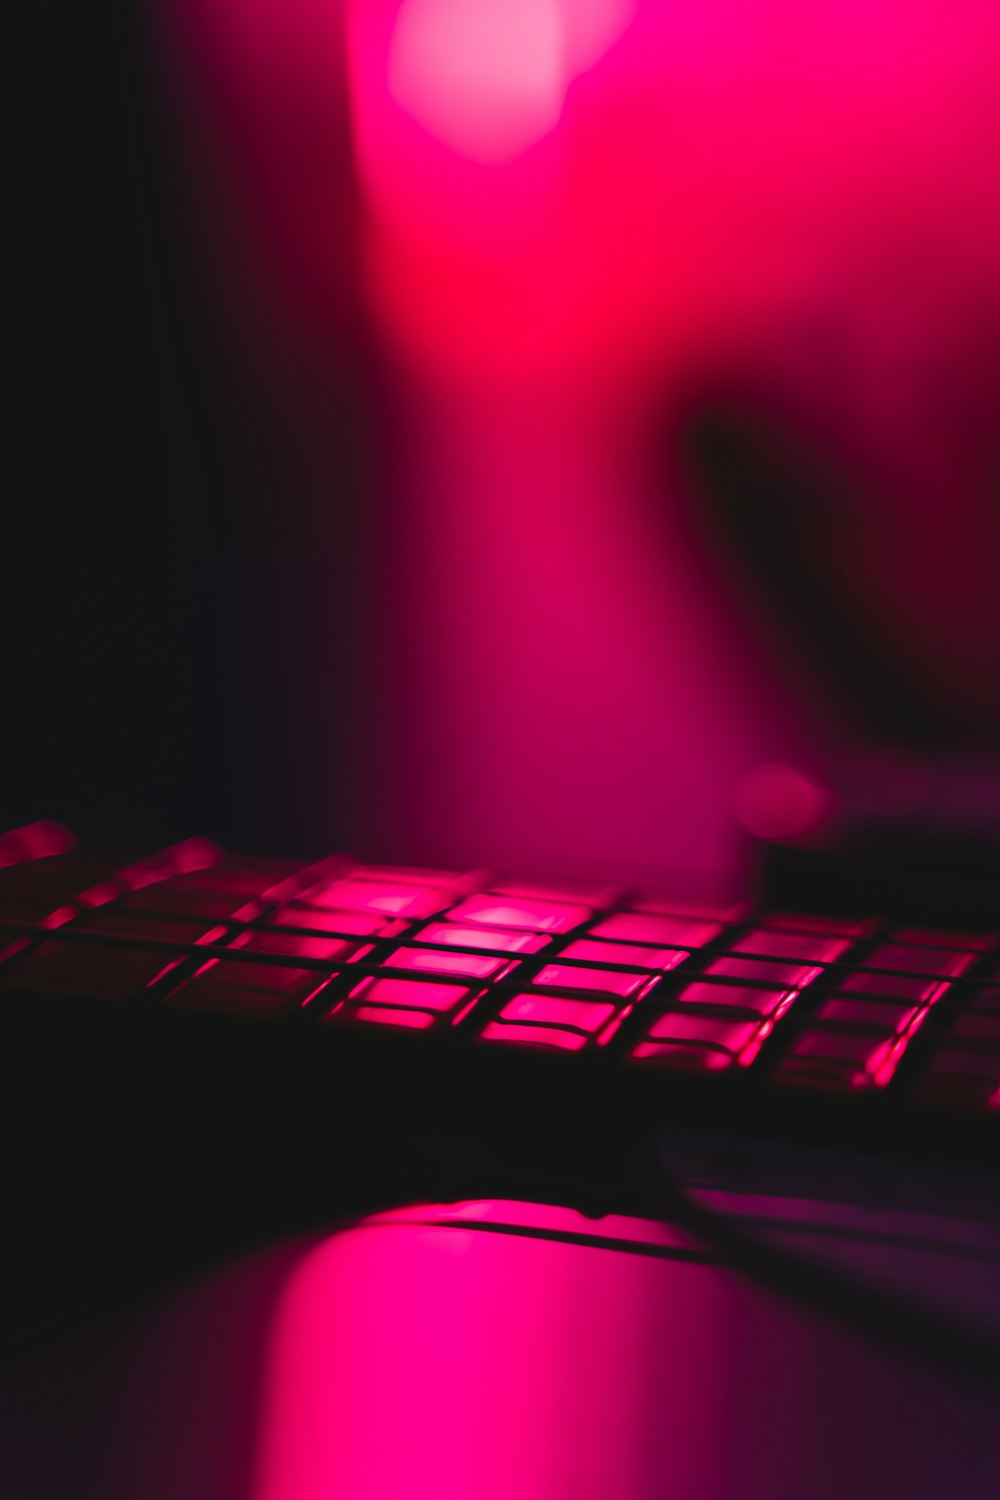 ピンクのテキスタイルに黒いコンピュ�ーターキーボード